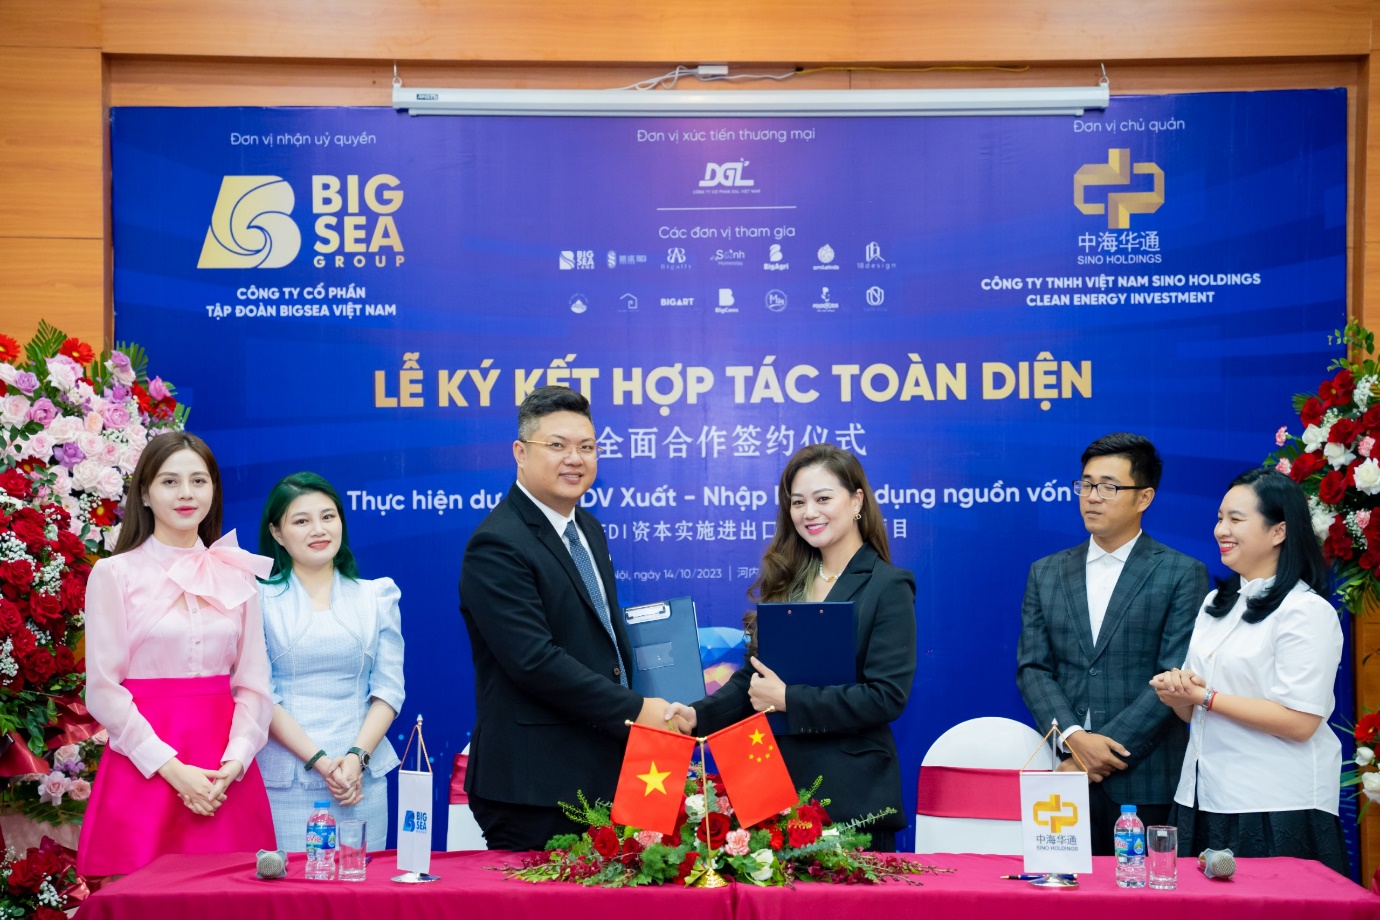 Lễ ký kết hợp tác chiến lược toàn diện giữa Bigsea Group và Vietnam Sino Holdings - 1